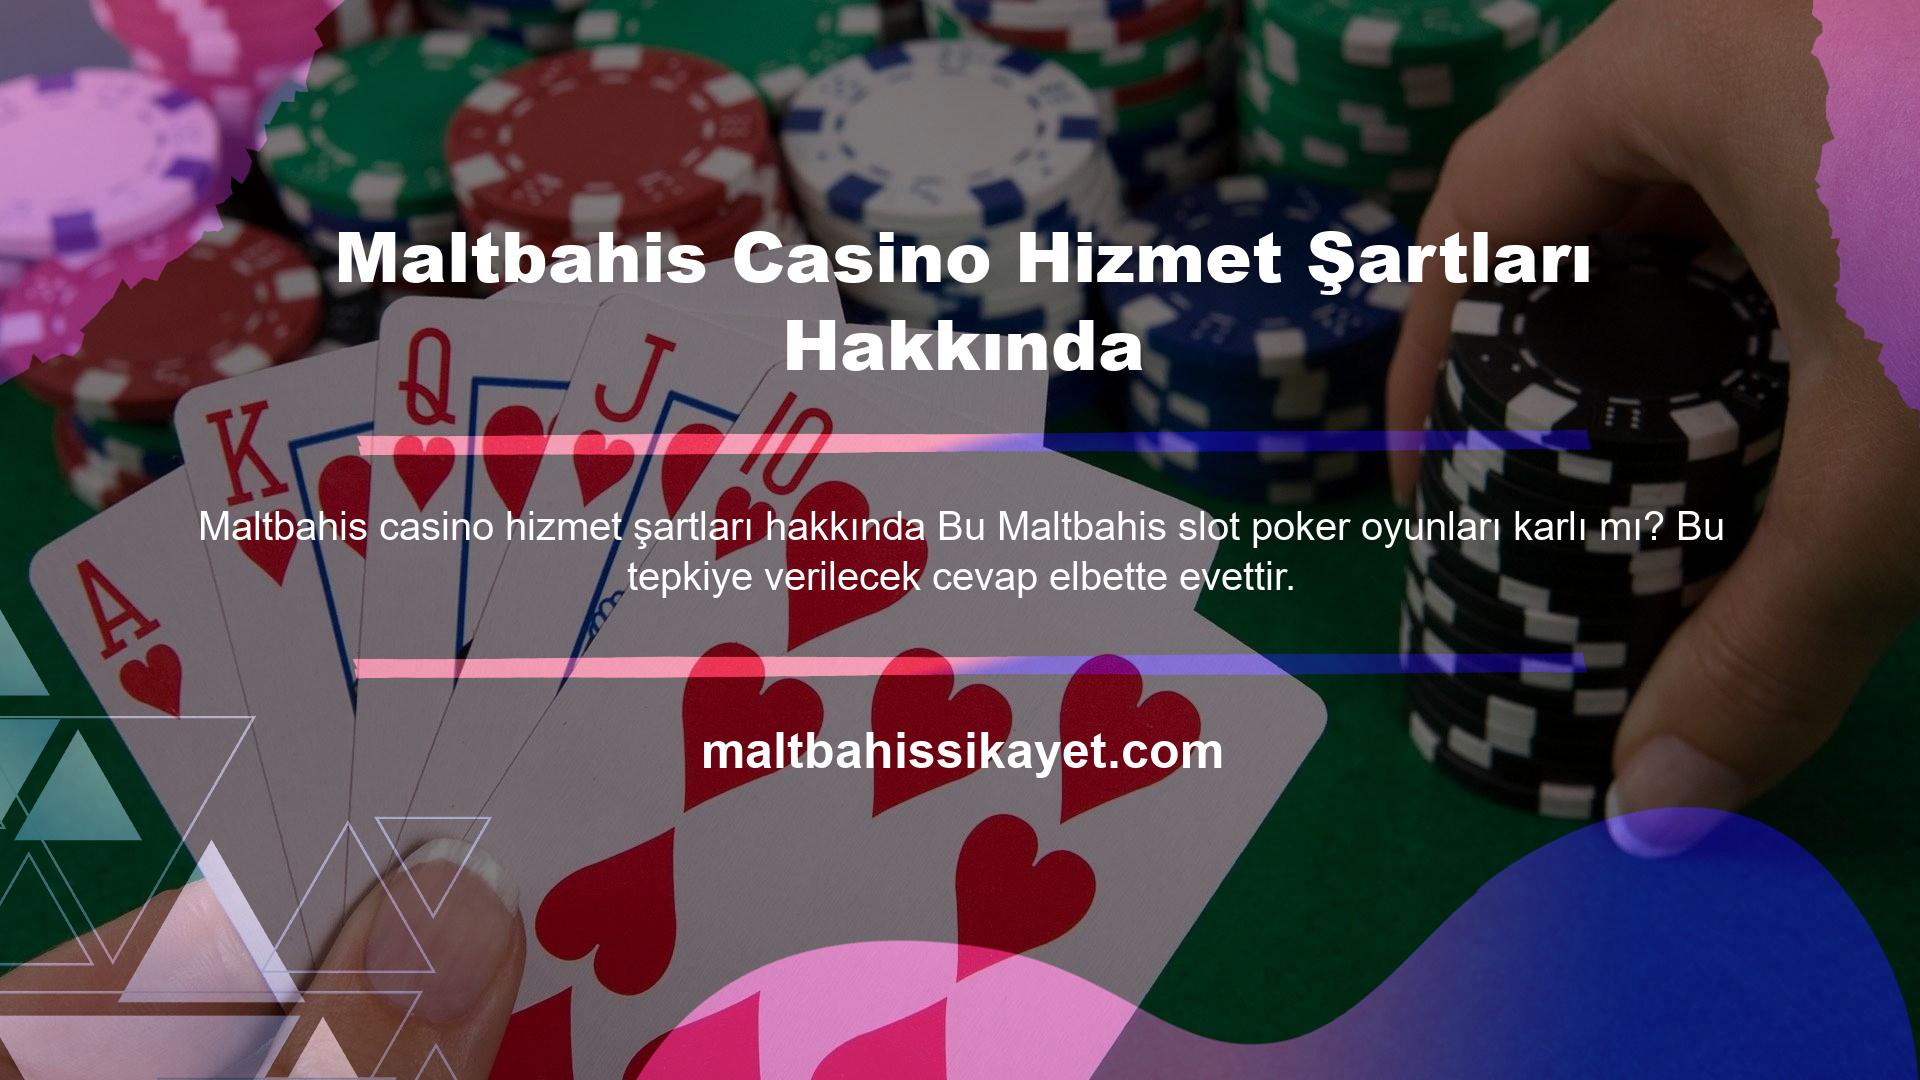 Maltbahis Casino Hizmet Şartları Hakkında